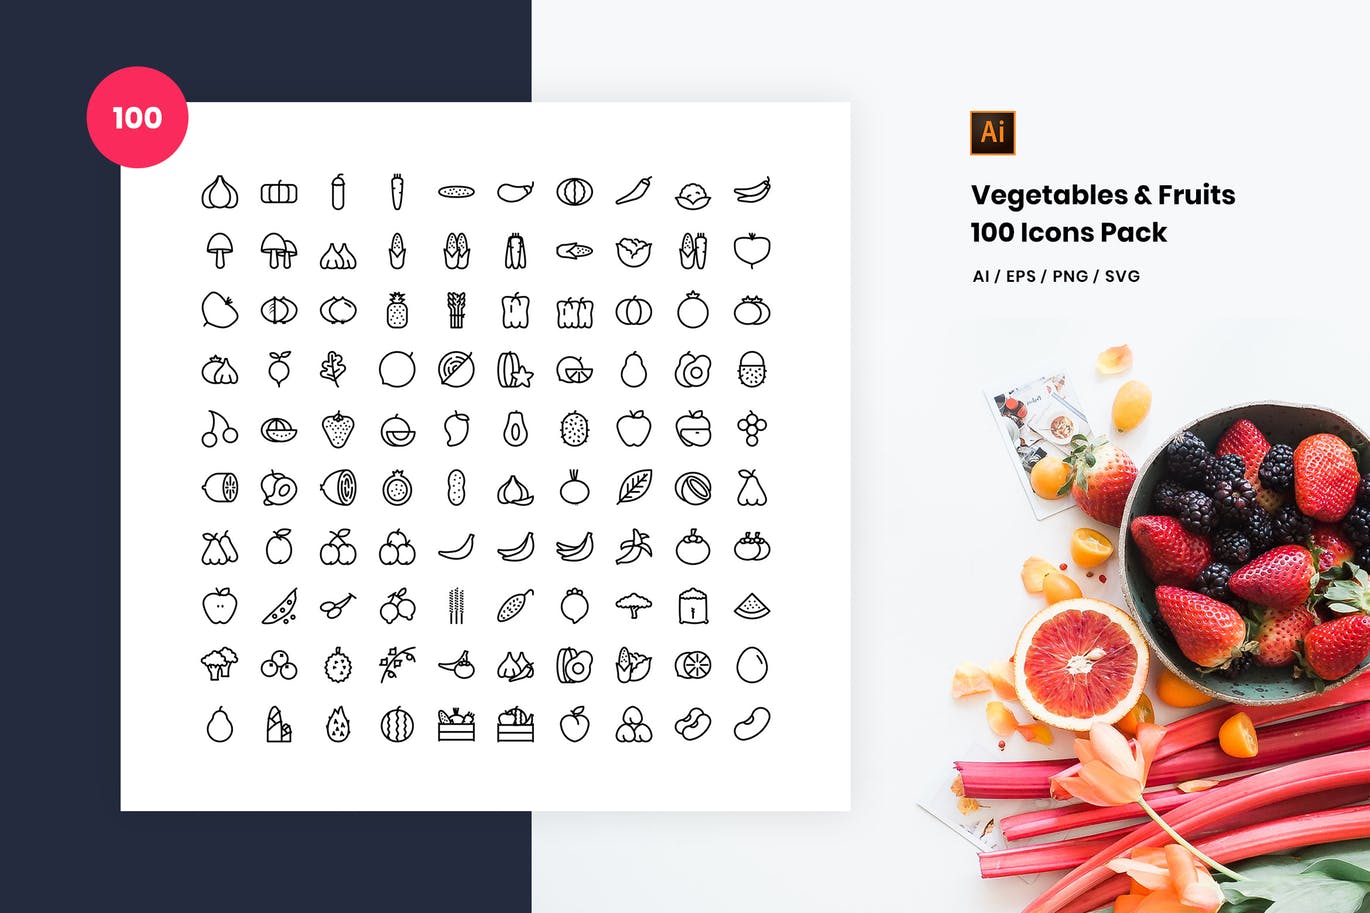 100枚蔬菜&水果主题矢量素材库精选图标 Vegetables and Fruits 100 Icon Pack插图